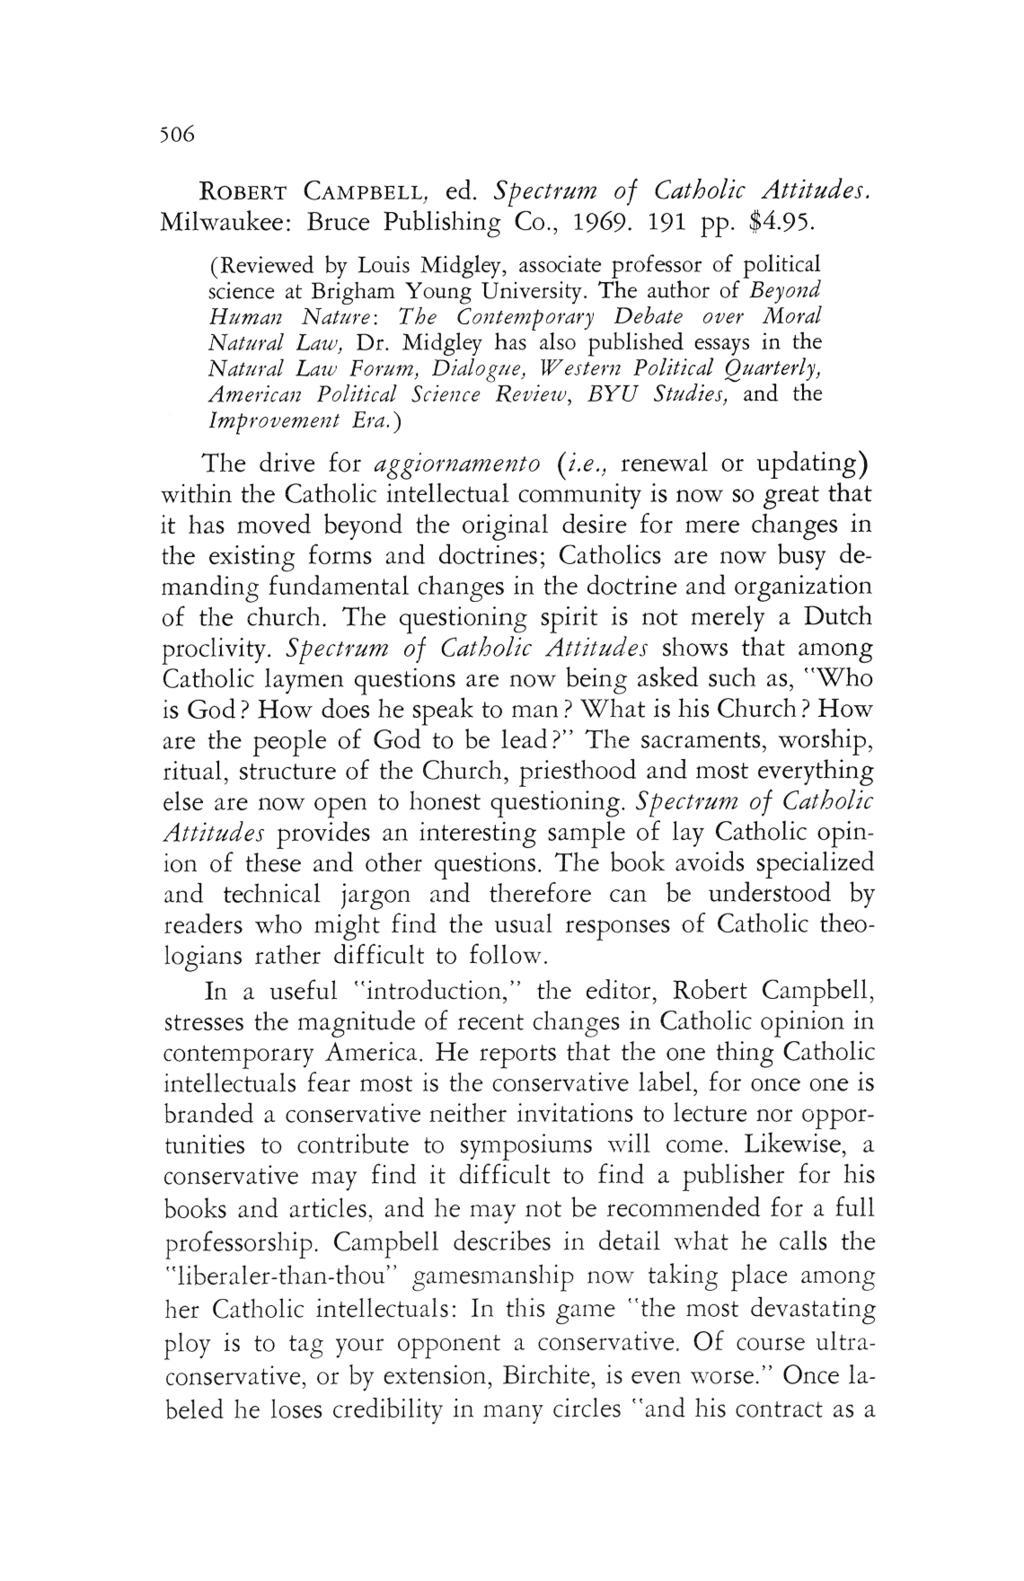 Midgley: <em>spectrum of Catholic Attitudes</em> Robert Campbell, ed. 506 ROBERT CAMPBELL ed spectrum of catholic attitudes milwaukee bruce publishing co 1969 191 pp 4.